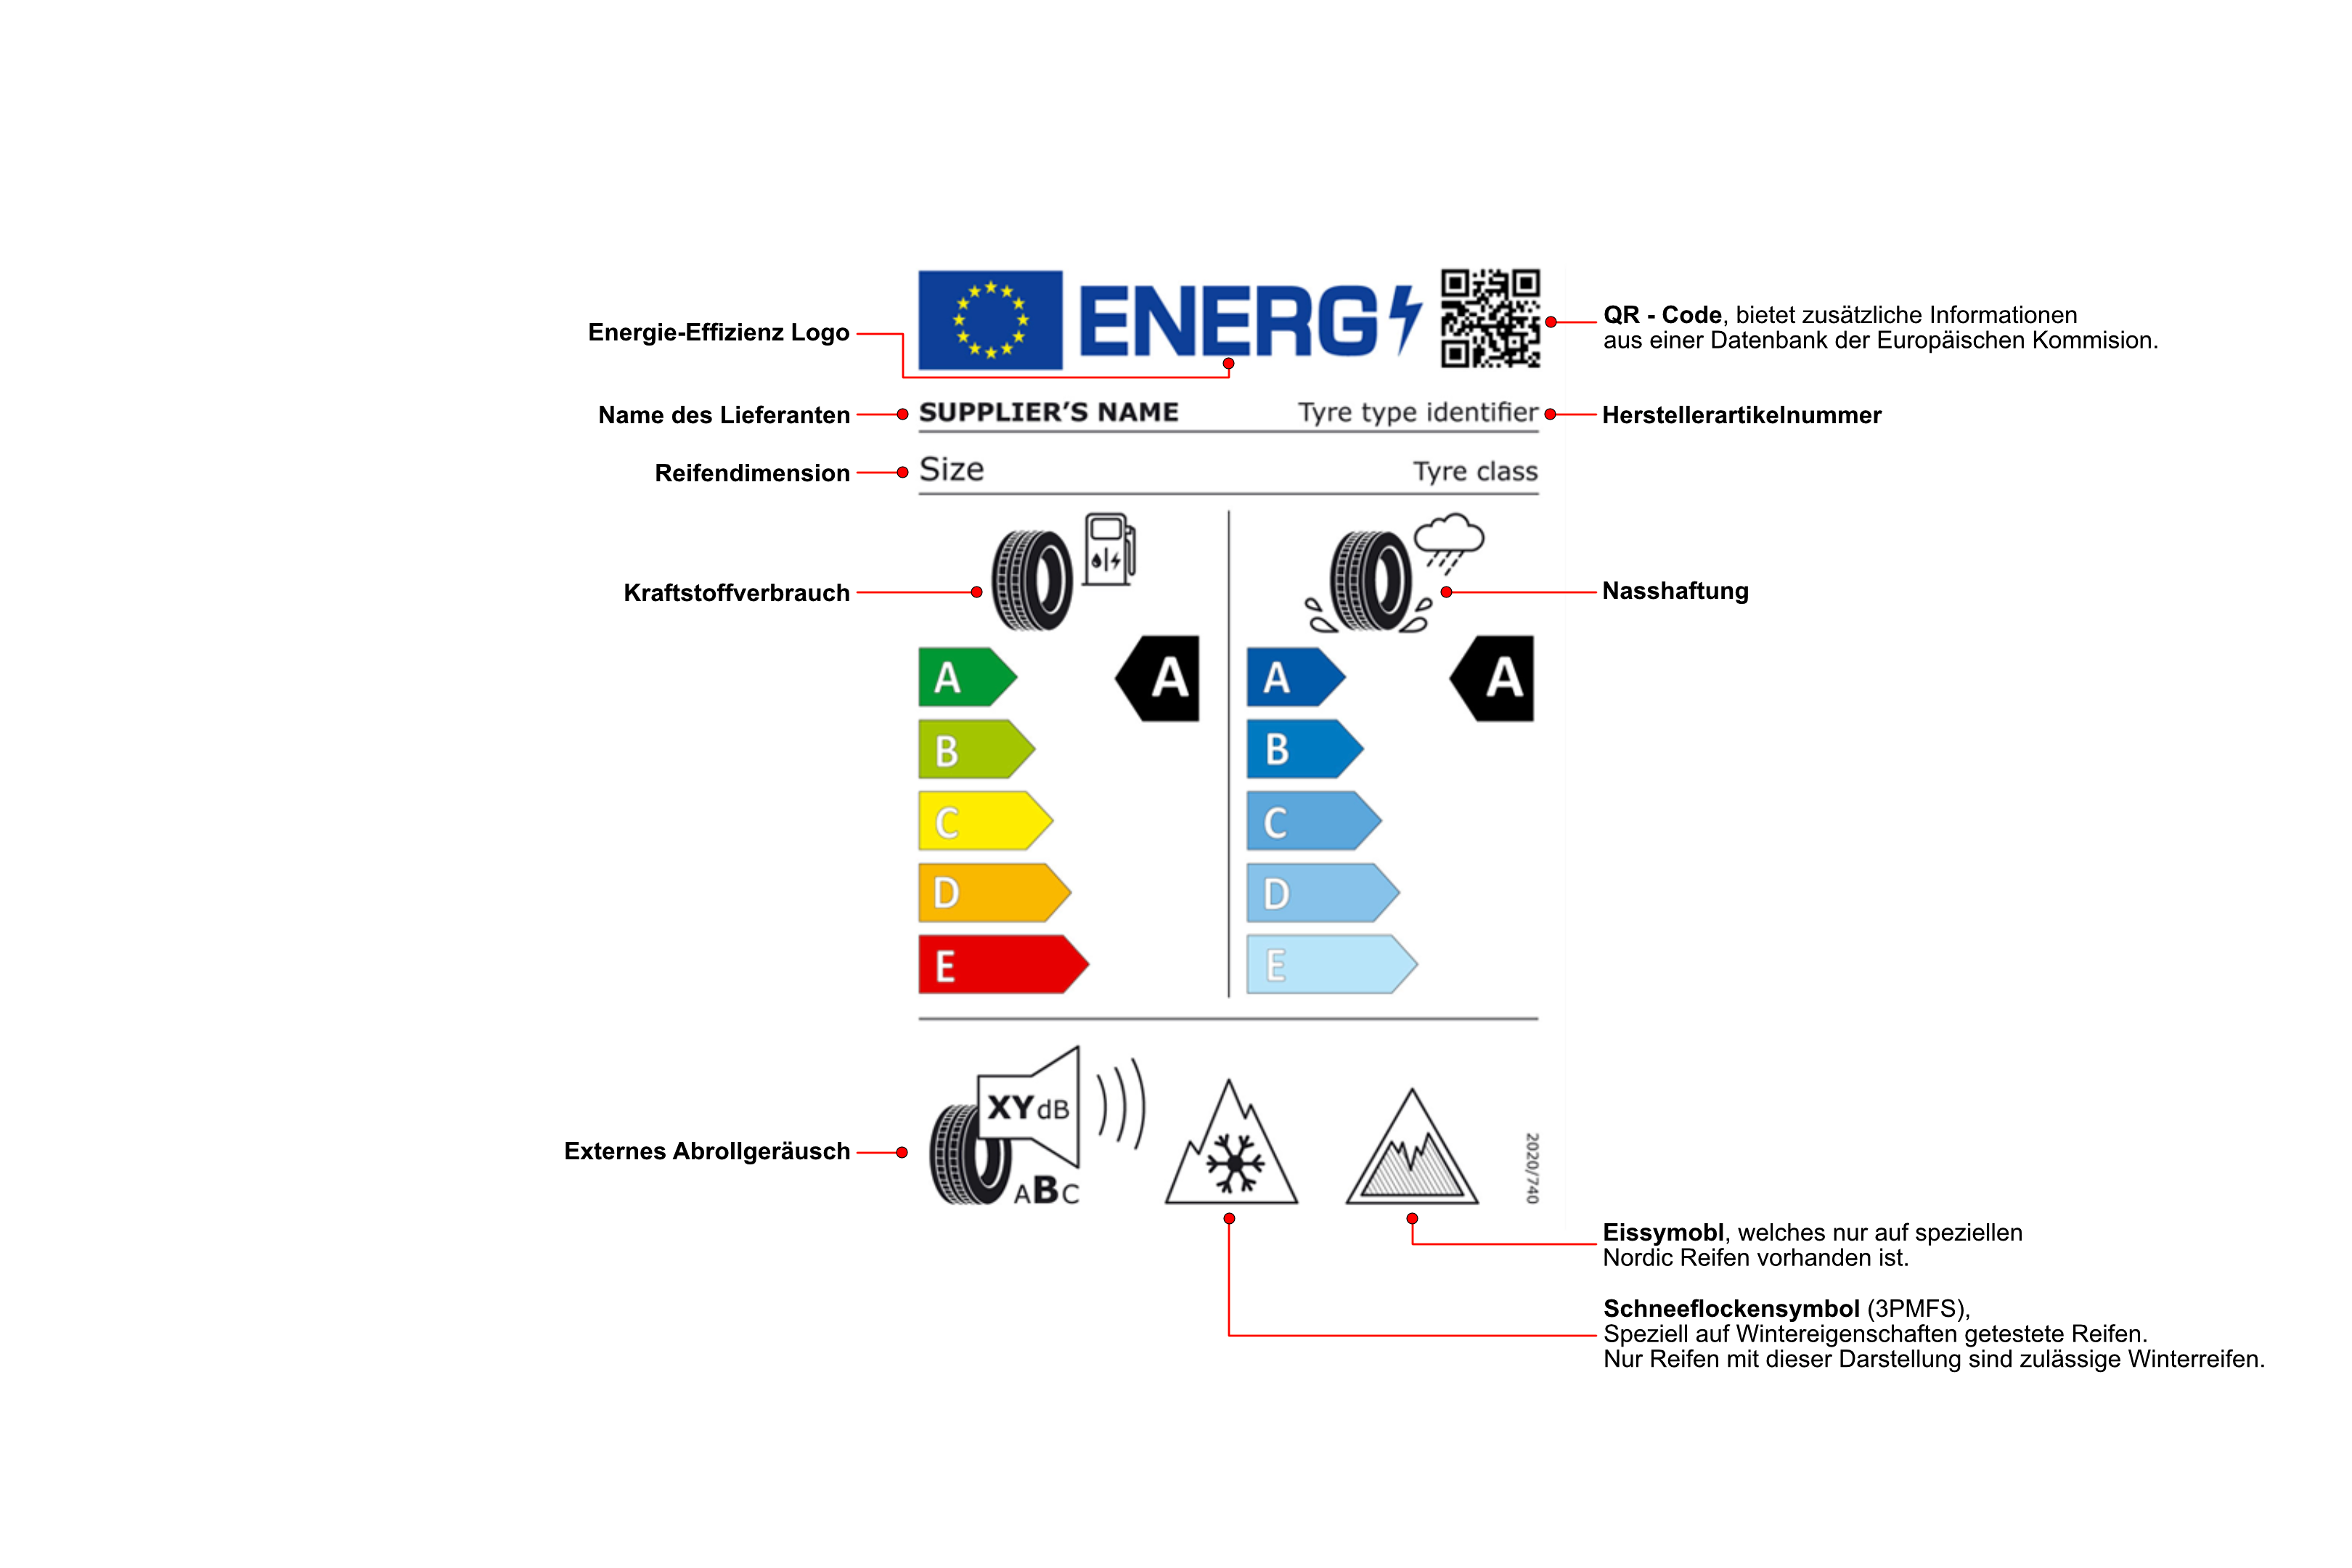 Darstellung des EU-Reifenlabels